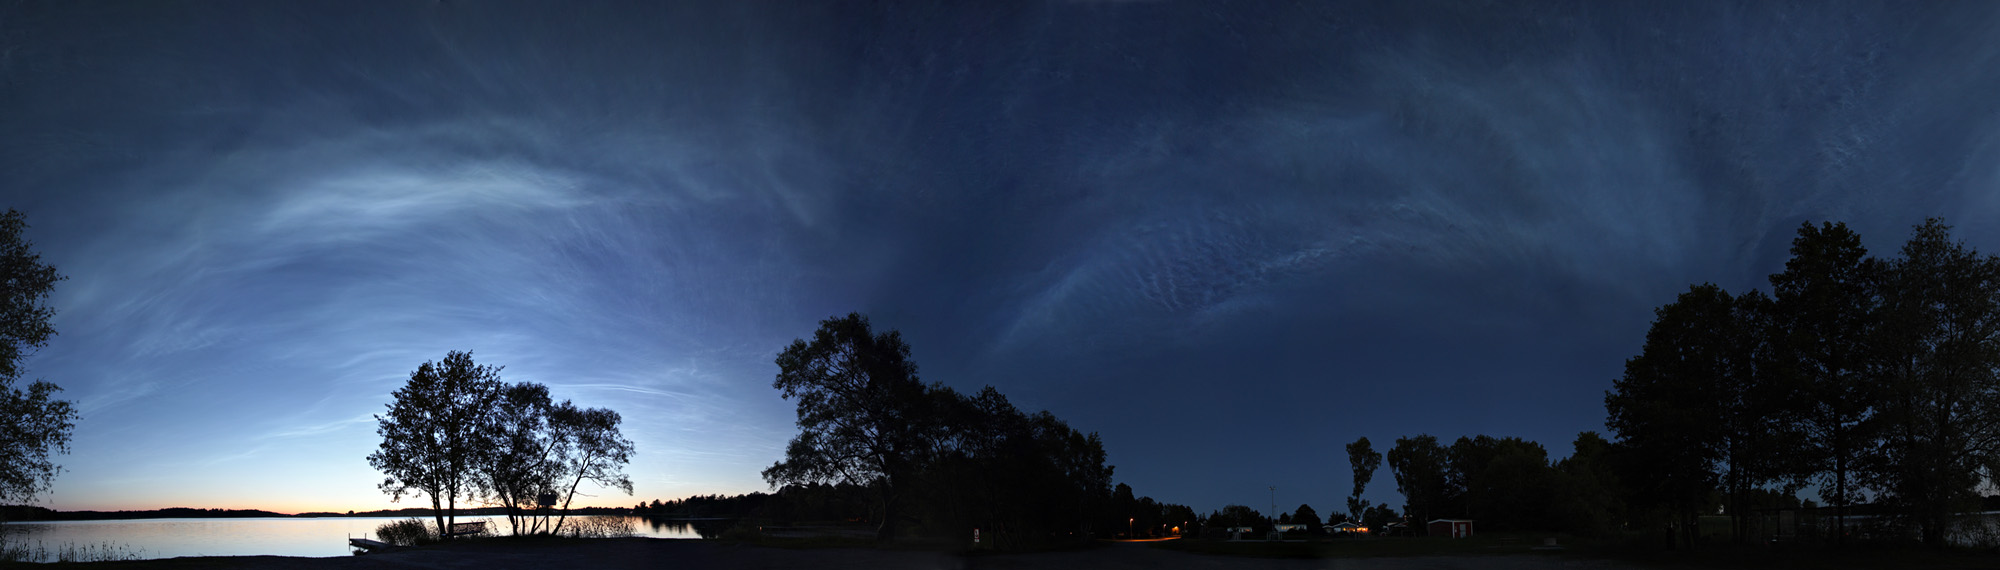 Noctilucent Cloud Storm Panorama